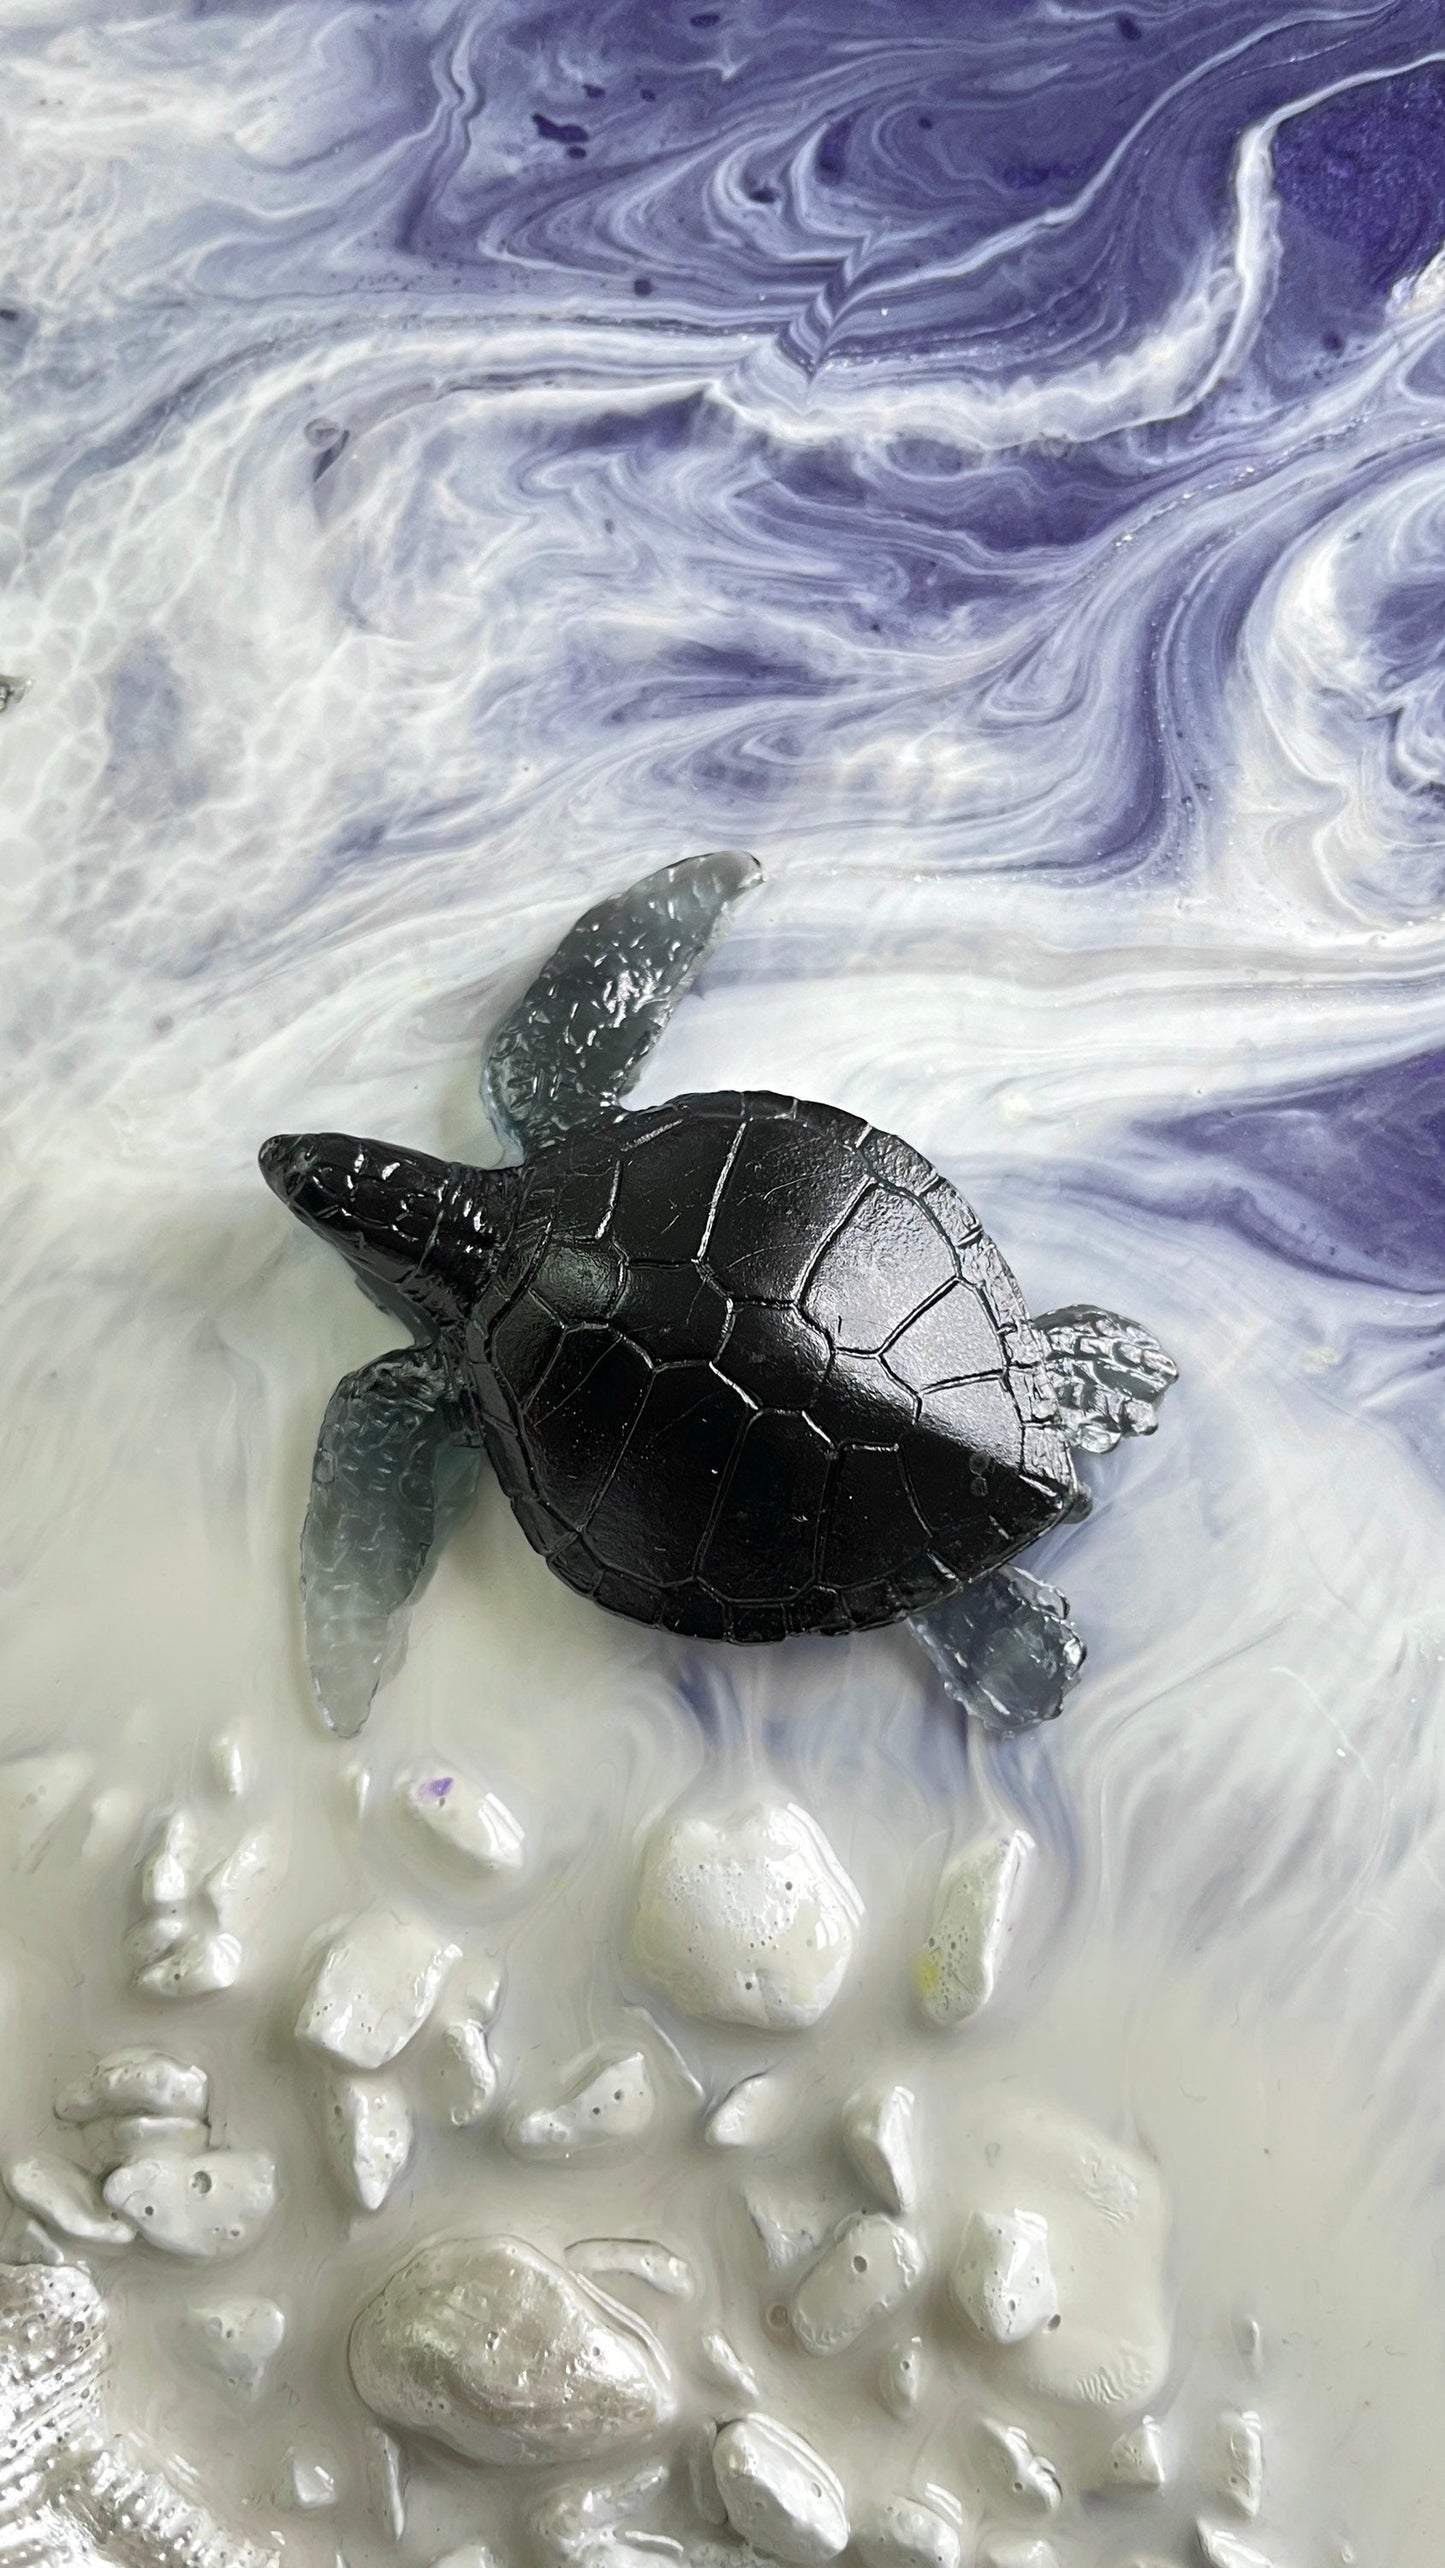 Набор силиконовых форм для морских фигурок: формы из натуральной эпоксидной смолы для кита, ската, черепахи